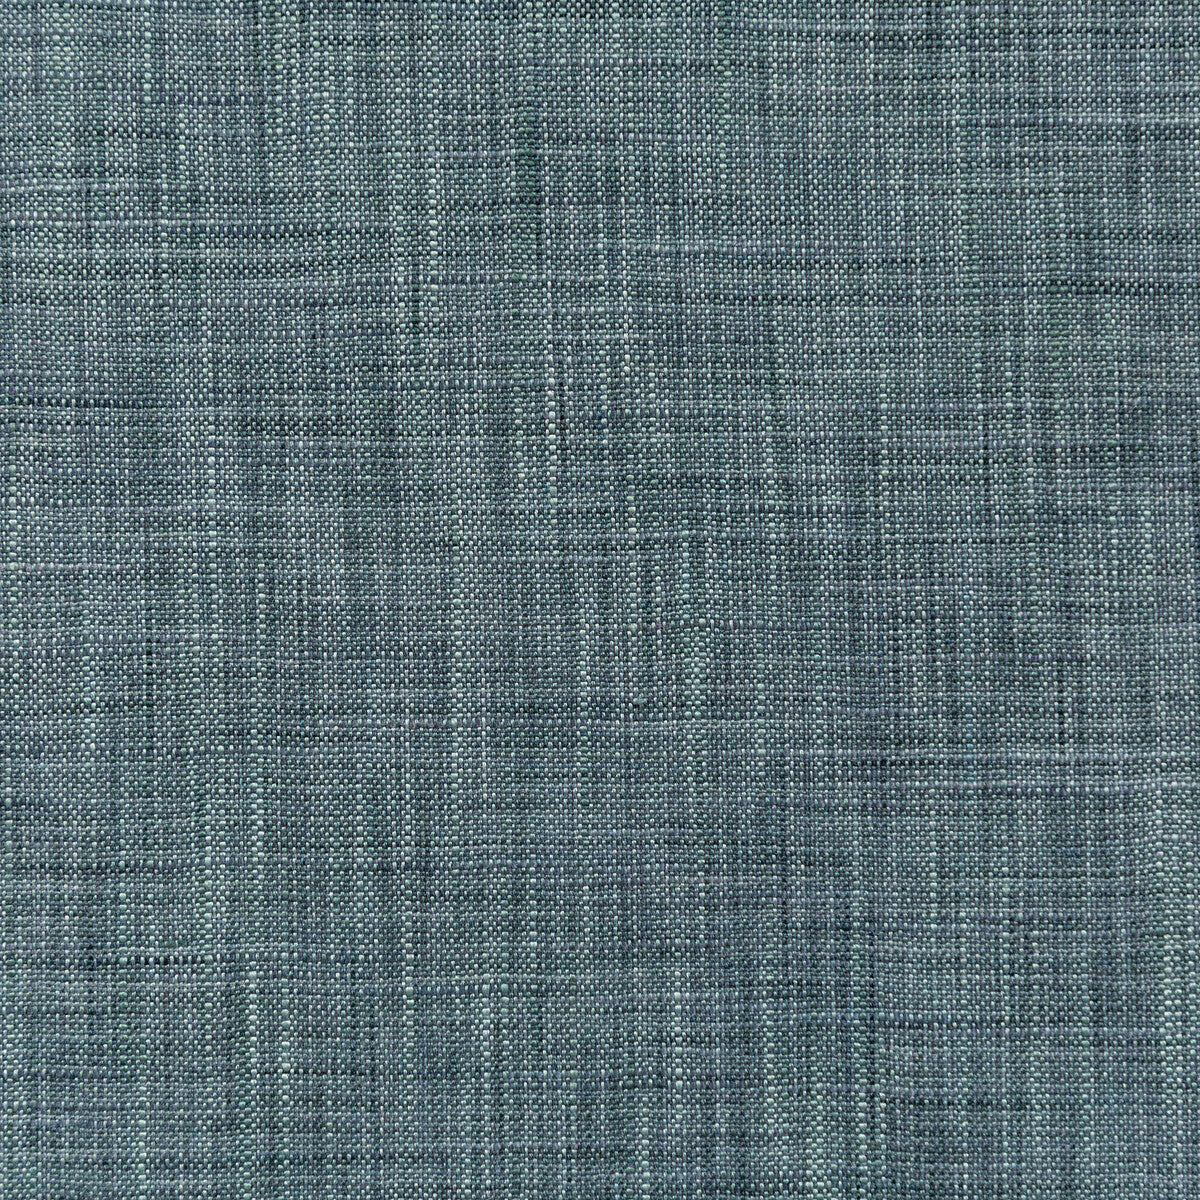 Kravet Basics fabric in 4668-52 color - pattern 4668.52.0 - by Kravet Basics